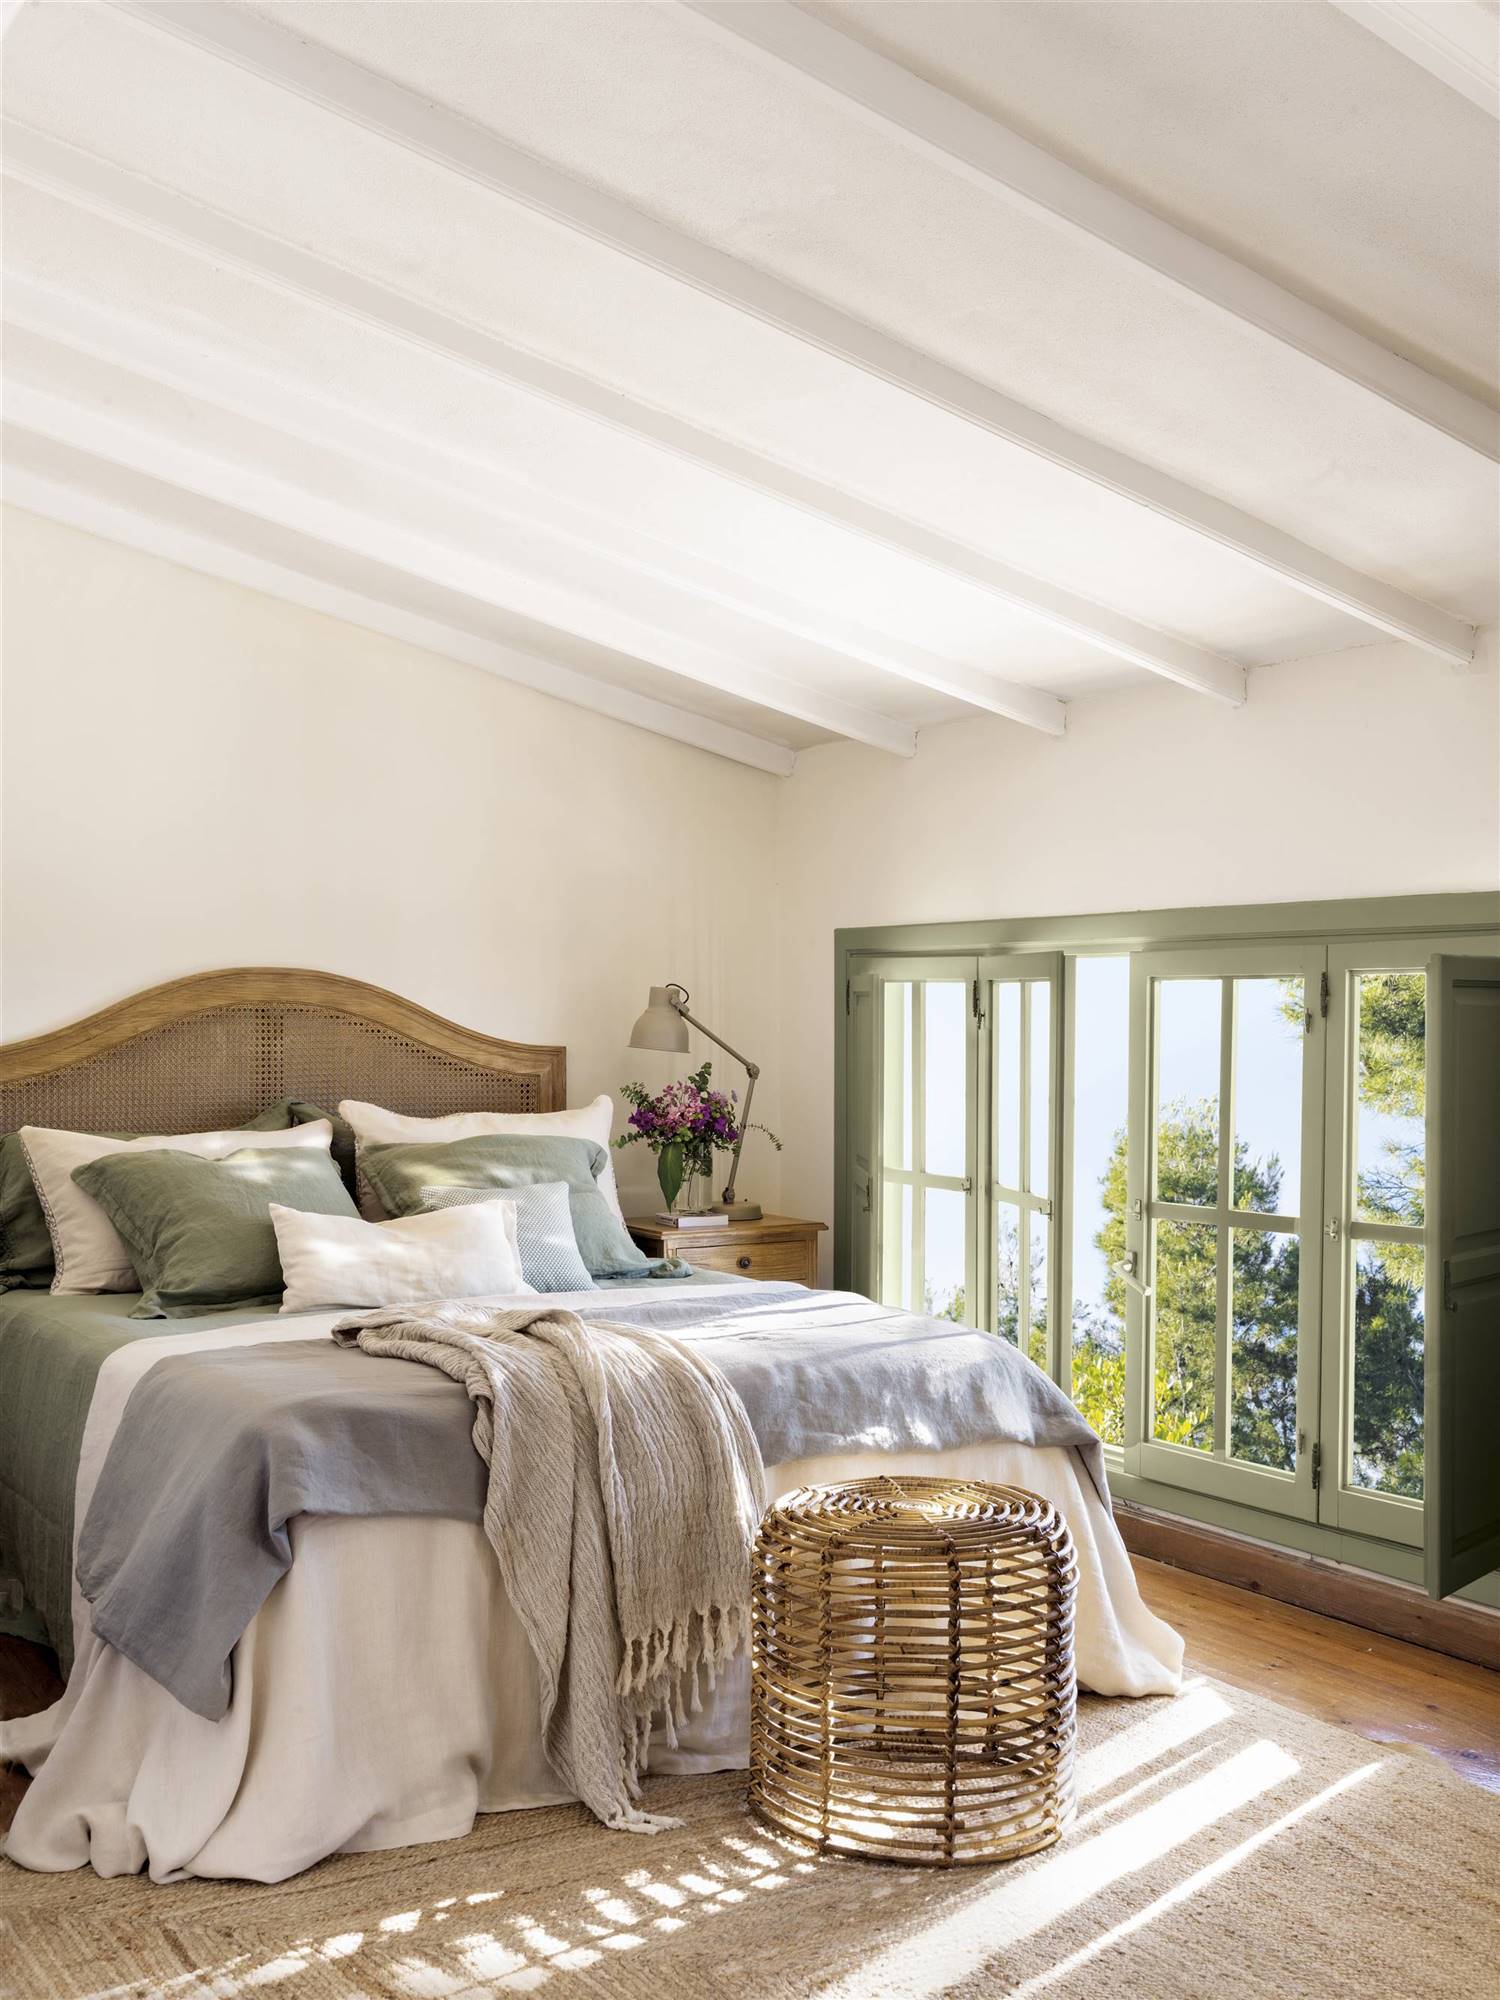 Dormitorio clásico con cabecero tapizado de madera y ropa de cama blanca, azul y verde.